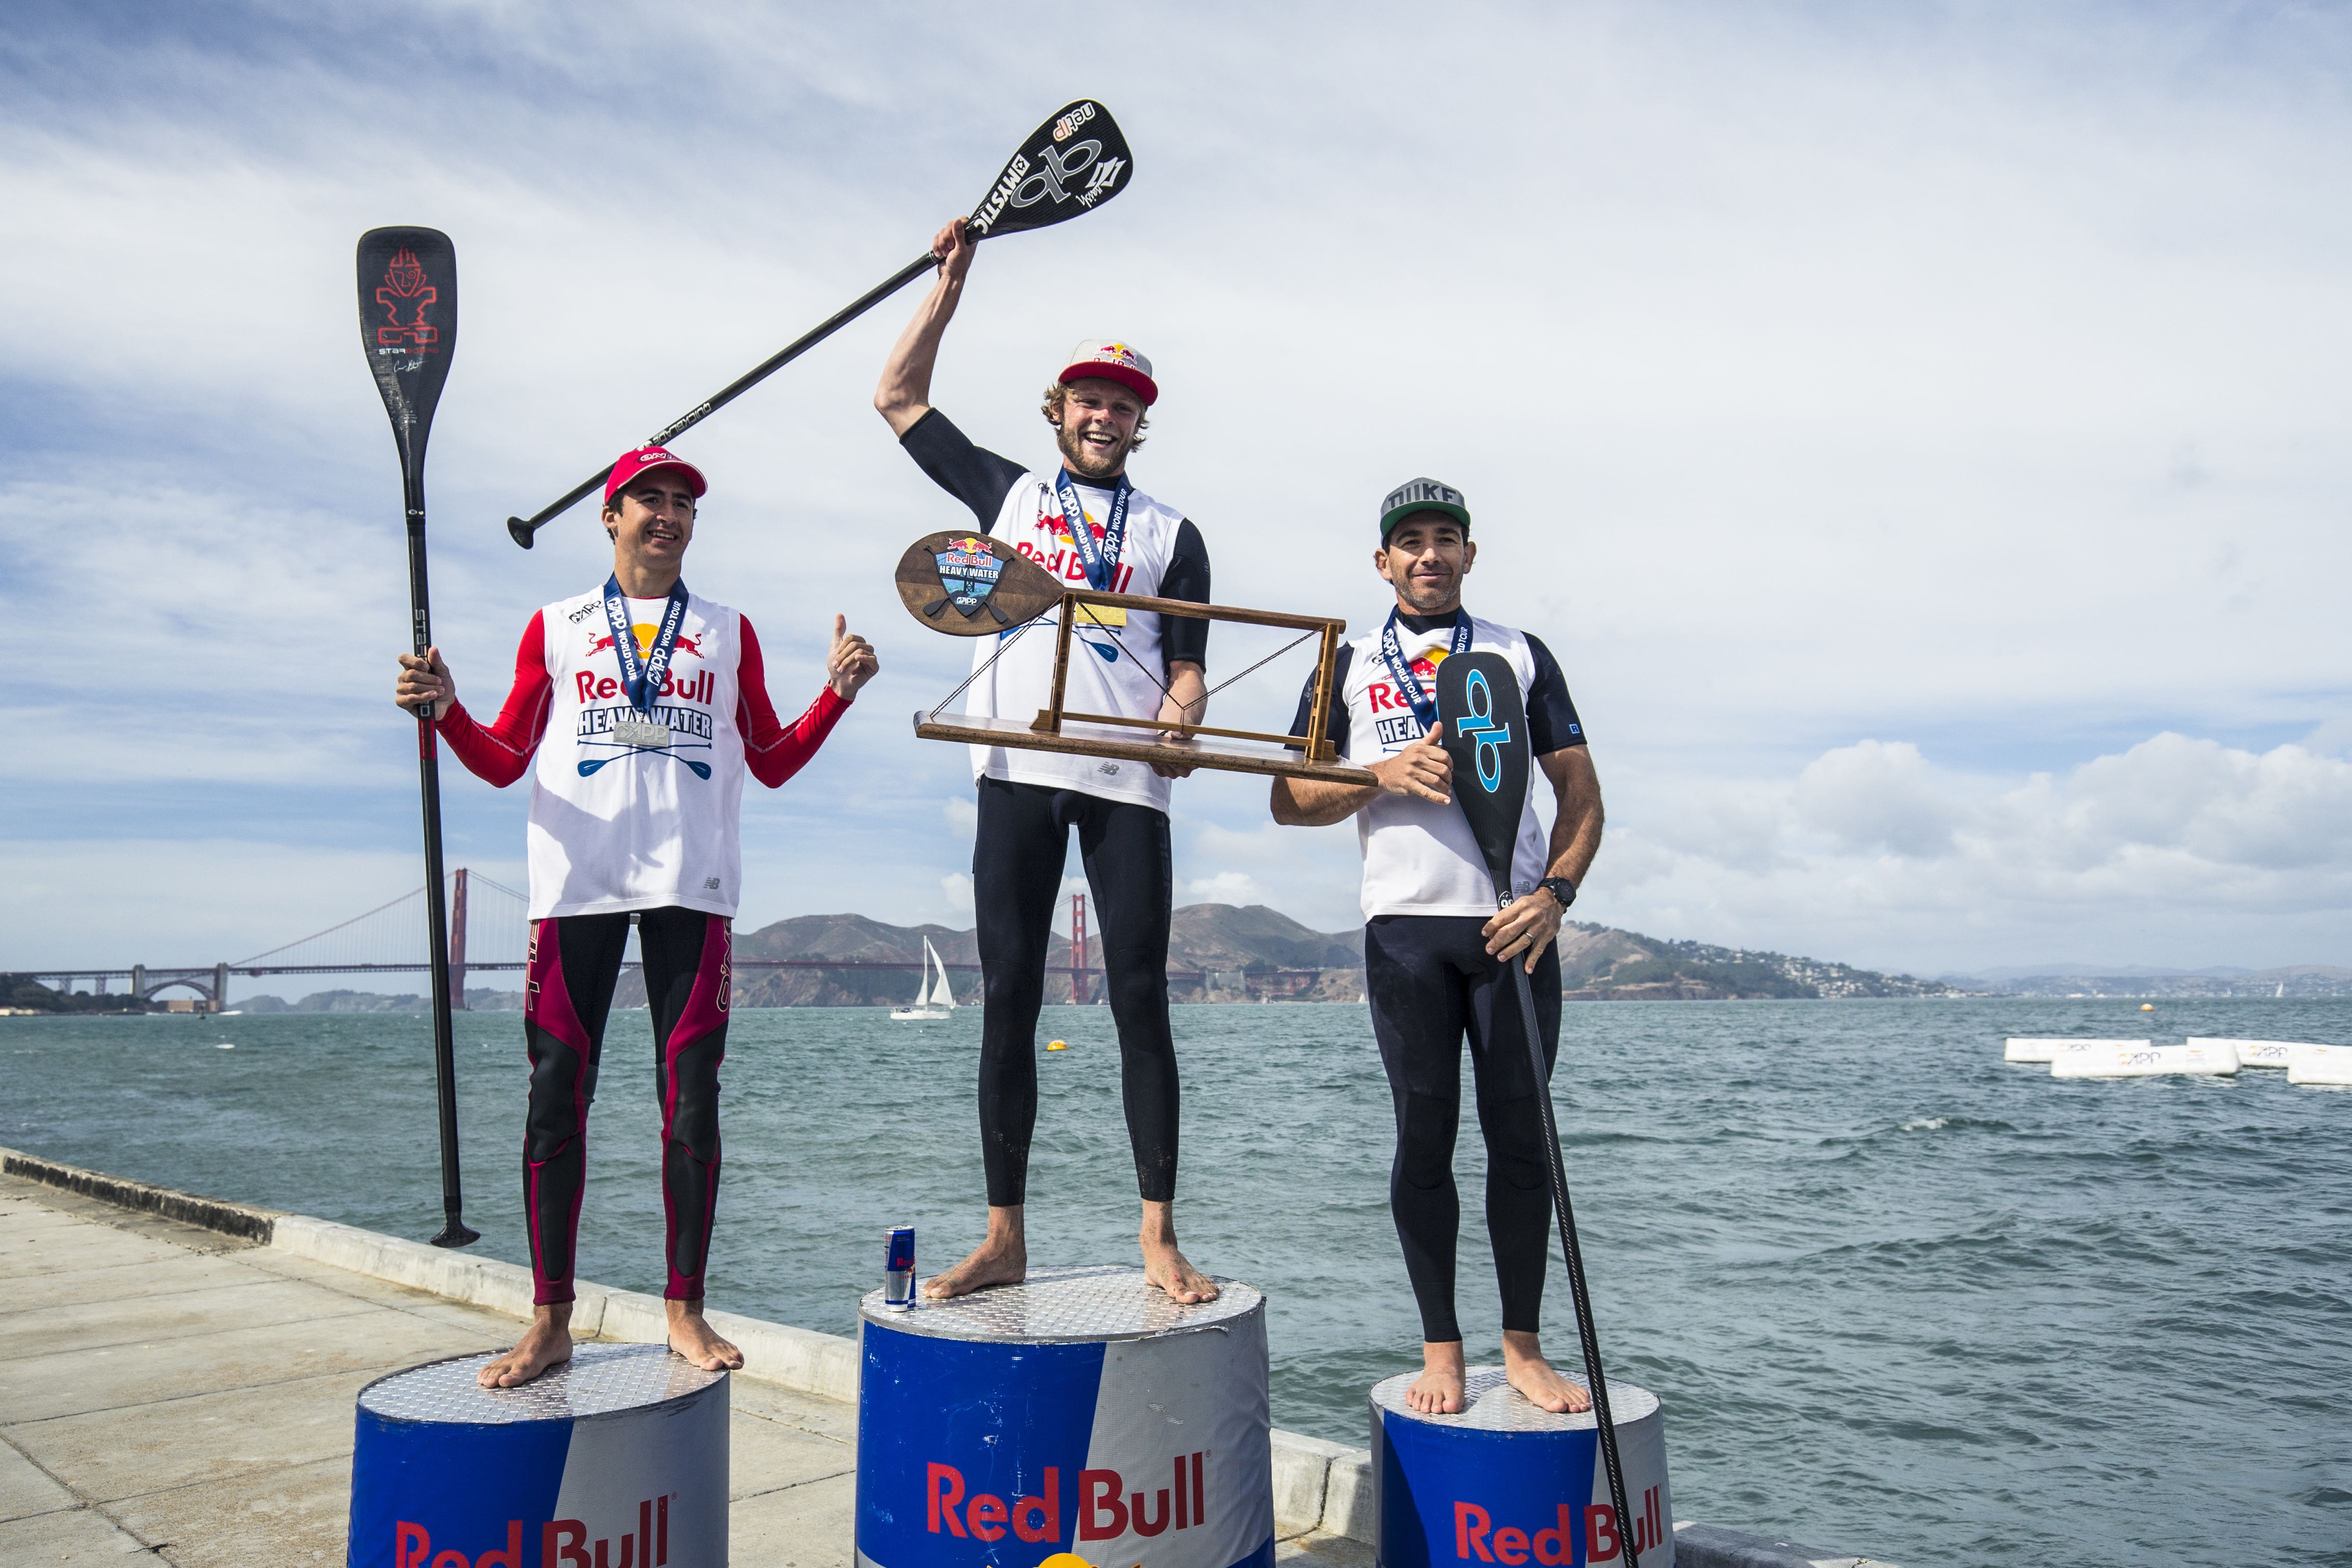 I vincitori Casper Steinfath, Ryan Funk, Travis Grant sul podio della Red Bull Heavy Water Stand Up Paddleboard Race - San Francisco, CA, USA - 20 ottobre 2017